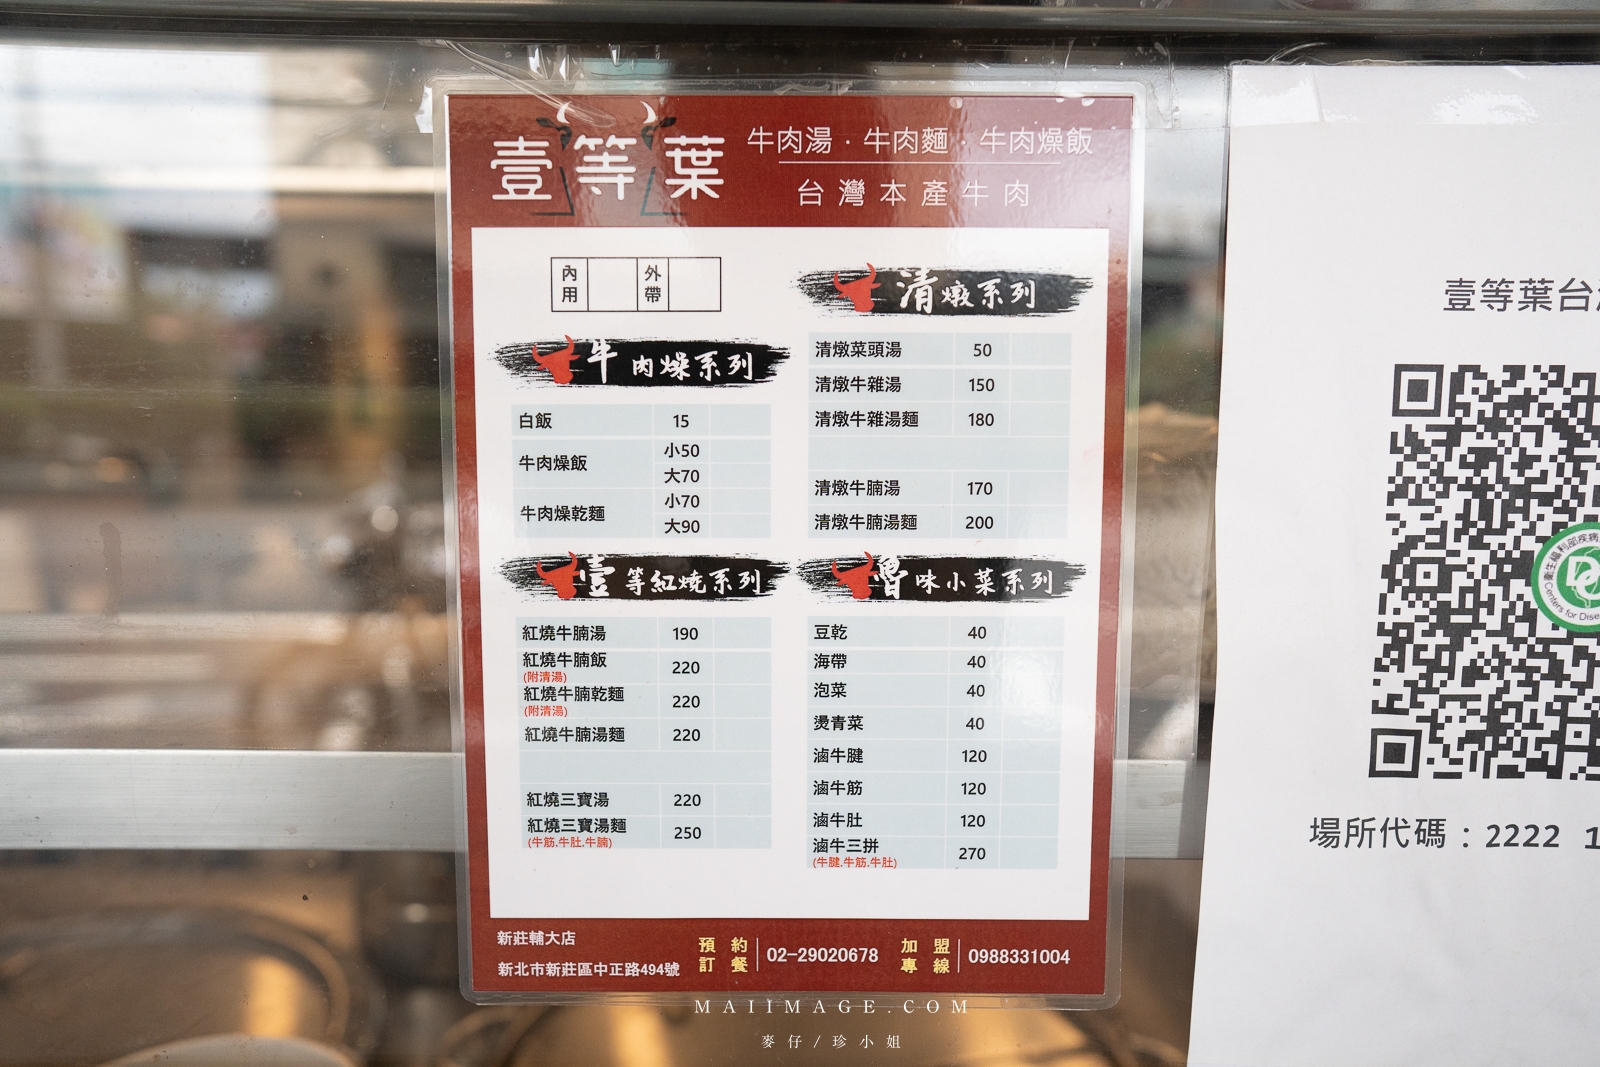 新莊牛肉麵｜壹等葉台灣本產牛肉小館、牛肉湯、牛肉麵、牛燥飯！新莊輔大美食推薦。